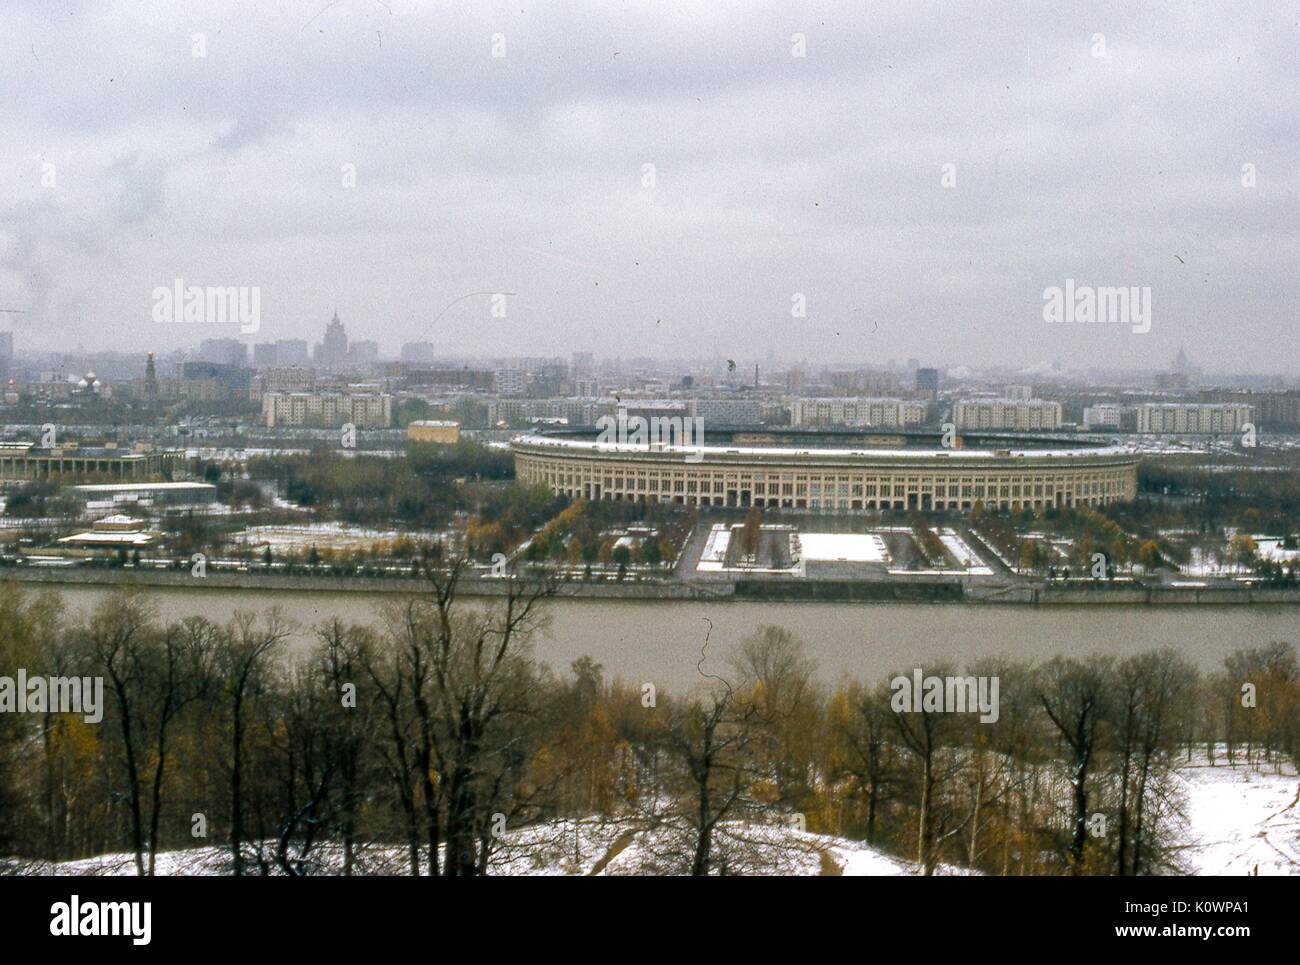 Vista panoramica affacciata a nord-est di luzhniki Olympic Stadium, visto da sparrow hills park attraverso il fiume Moskva, a Mosca, Russia sovietica, URSS, novembre 1973. Foto Stock